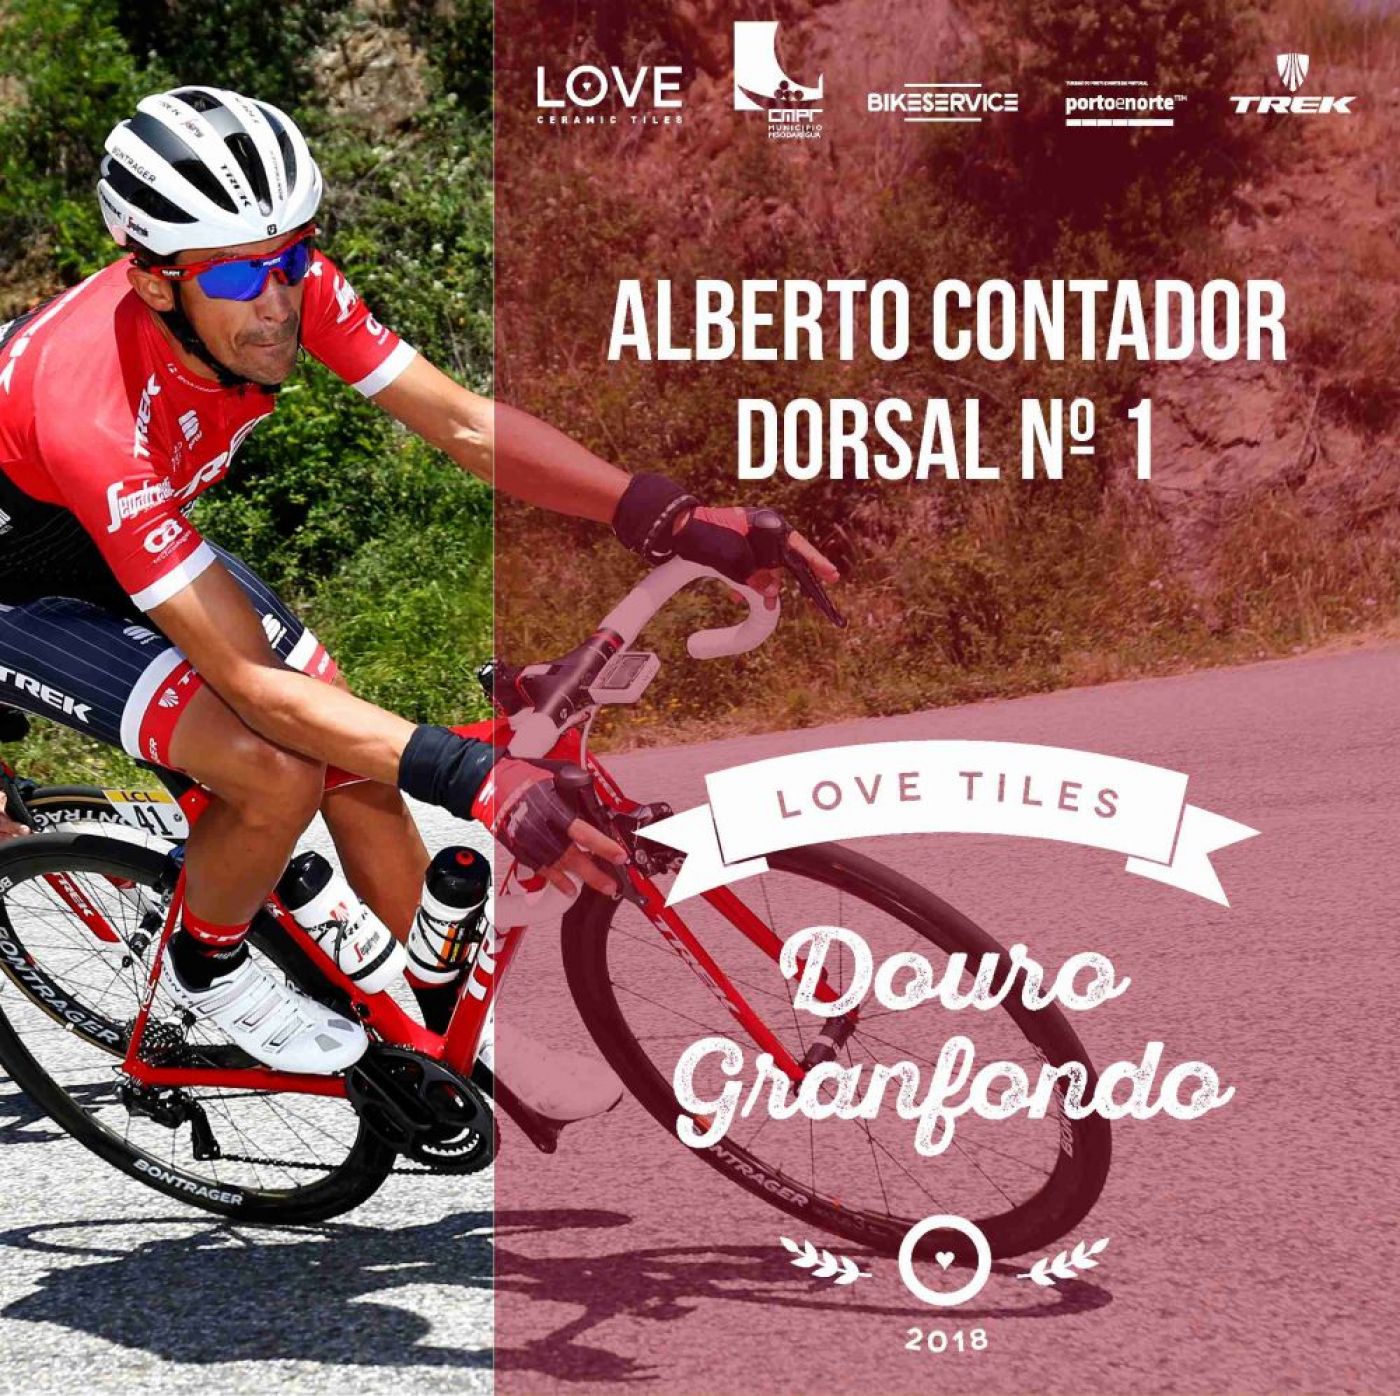 Alberto Contador dorsal nº1 | Love Tiles Douro Granfondo